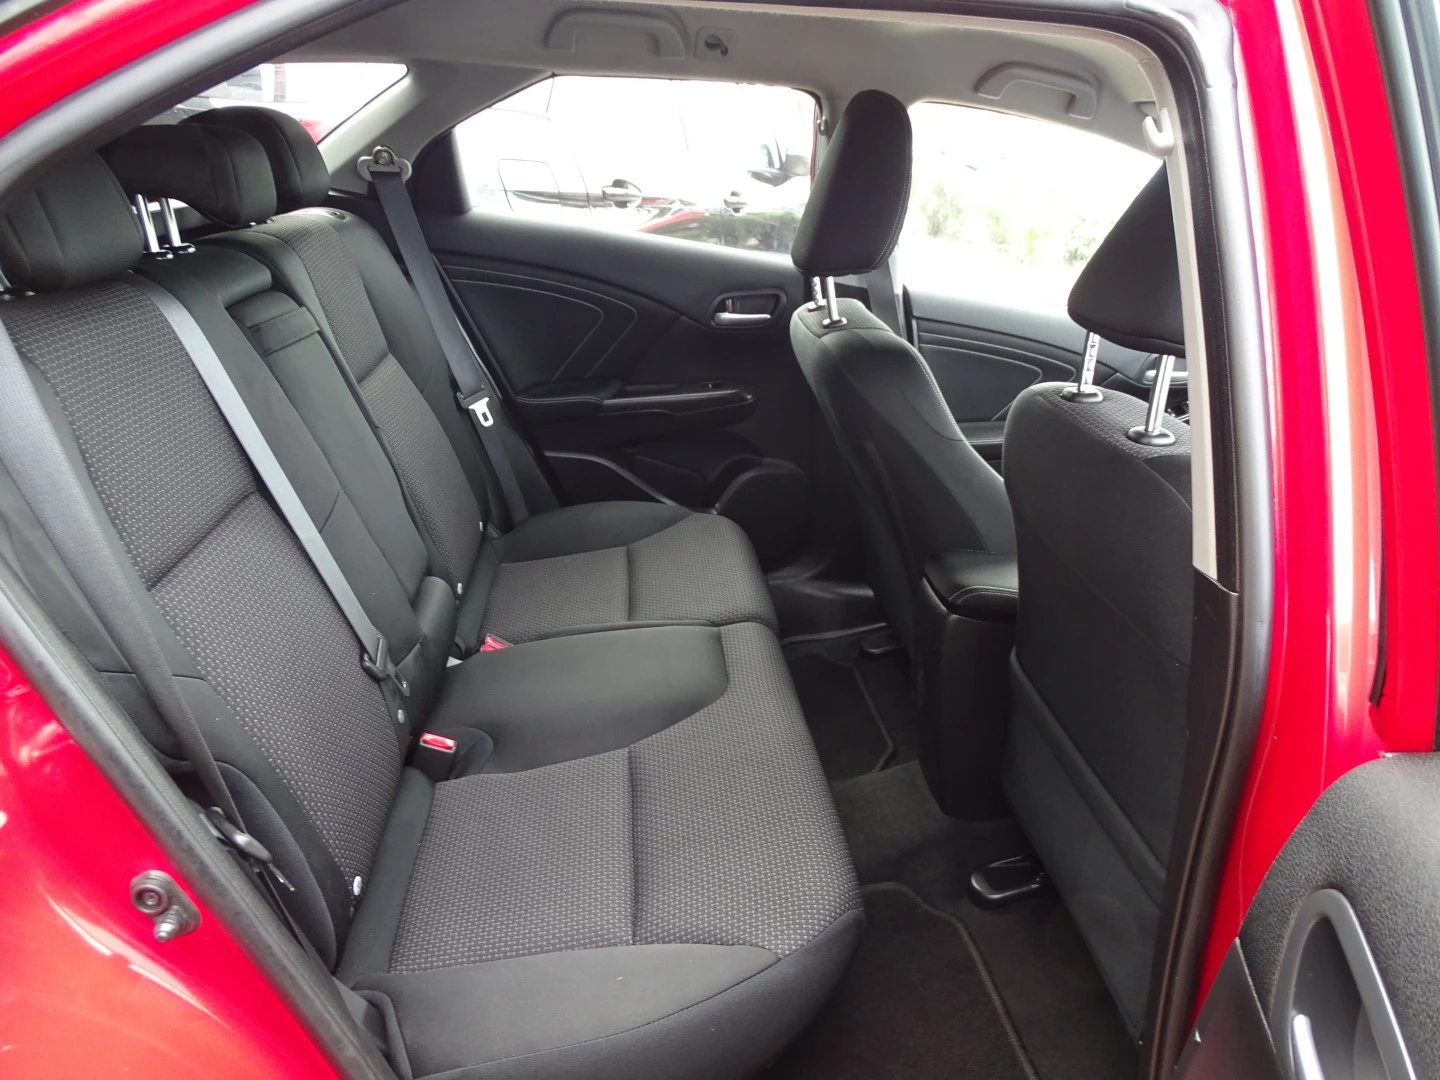 Honda Civic Tourer 1.6 i-DTEC Comfort